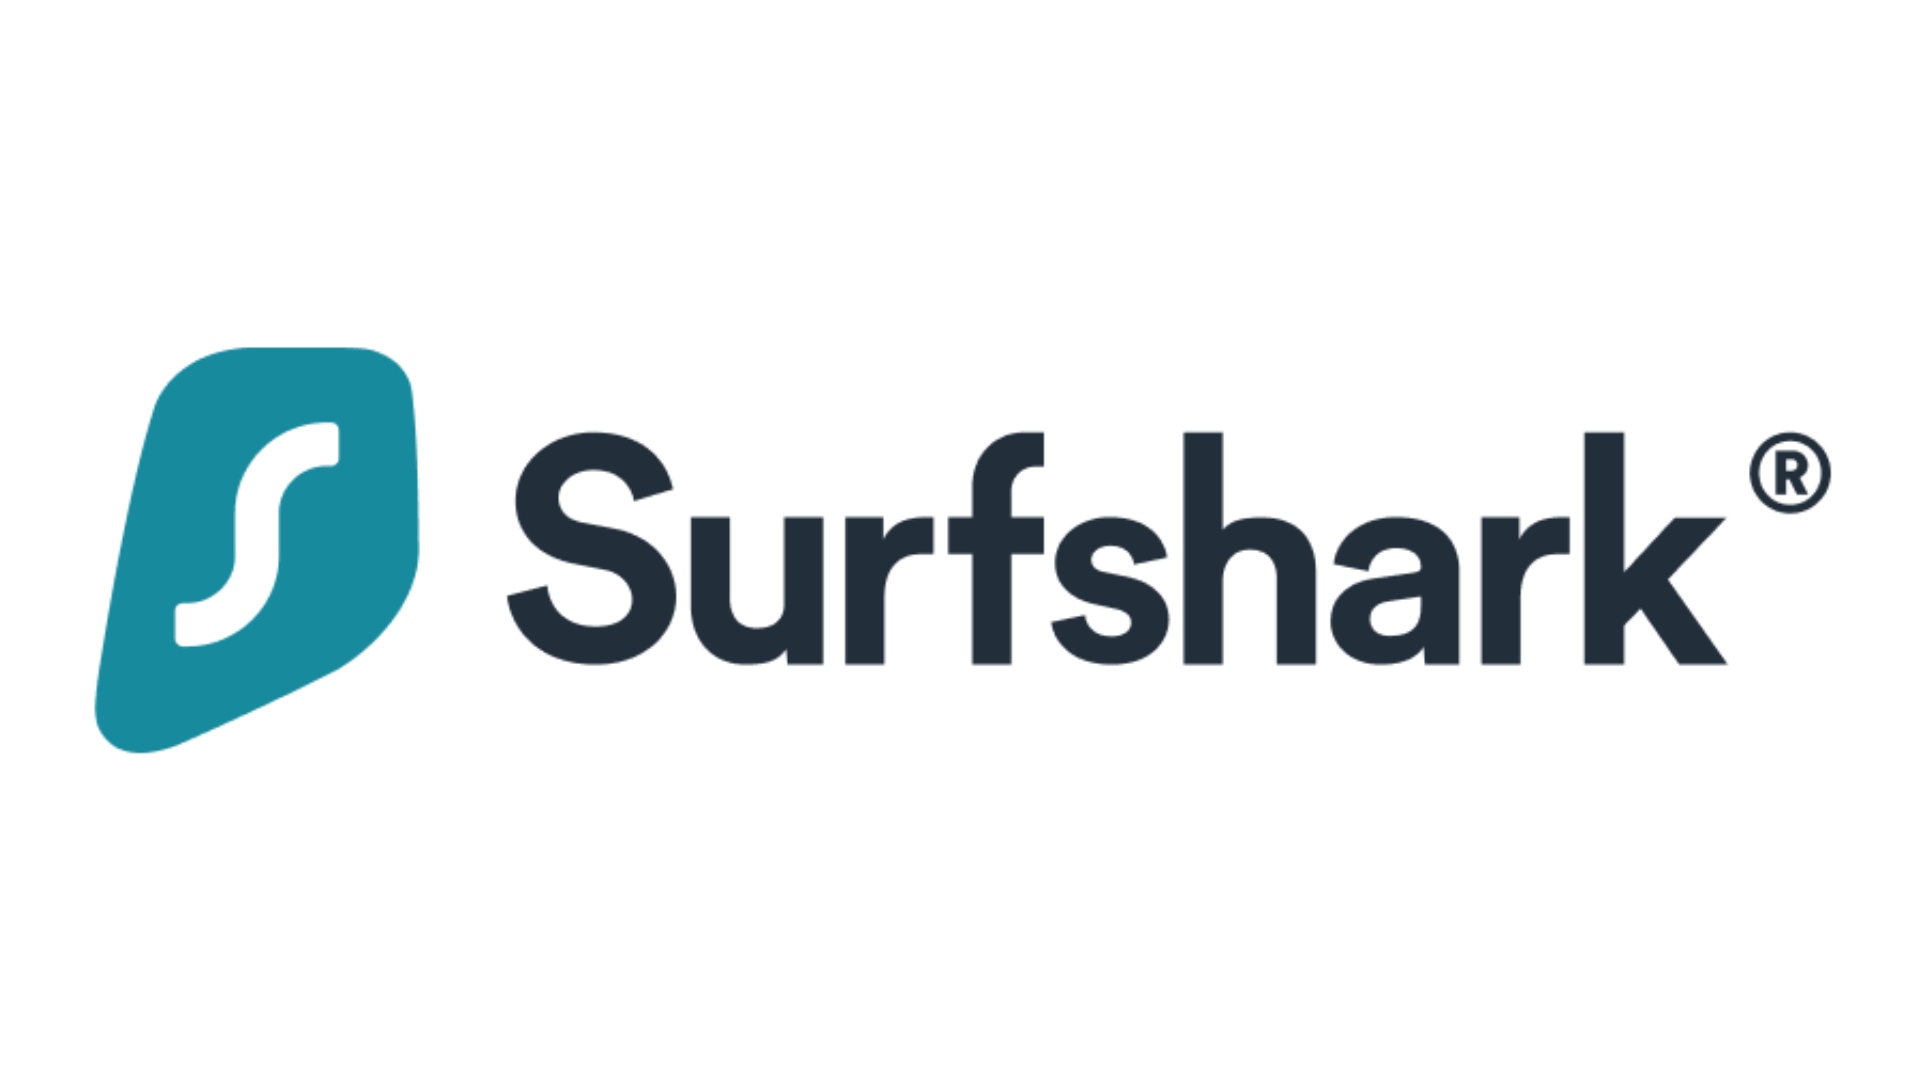 Surfshark's logo.